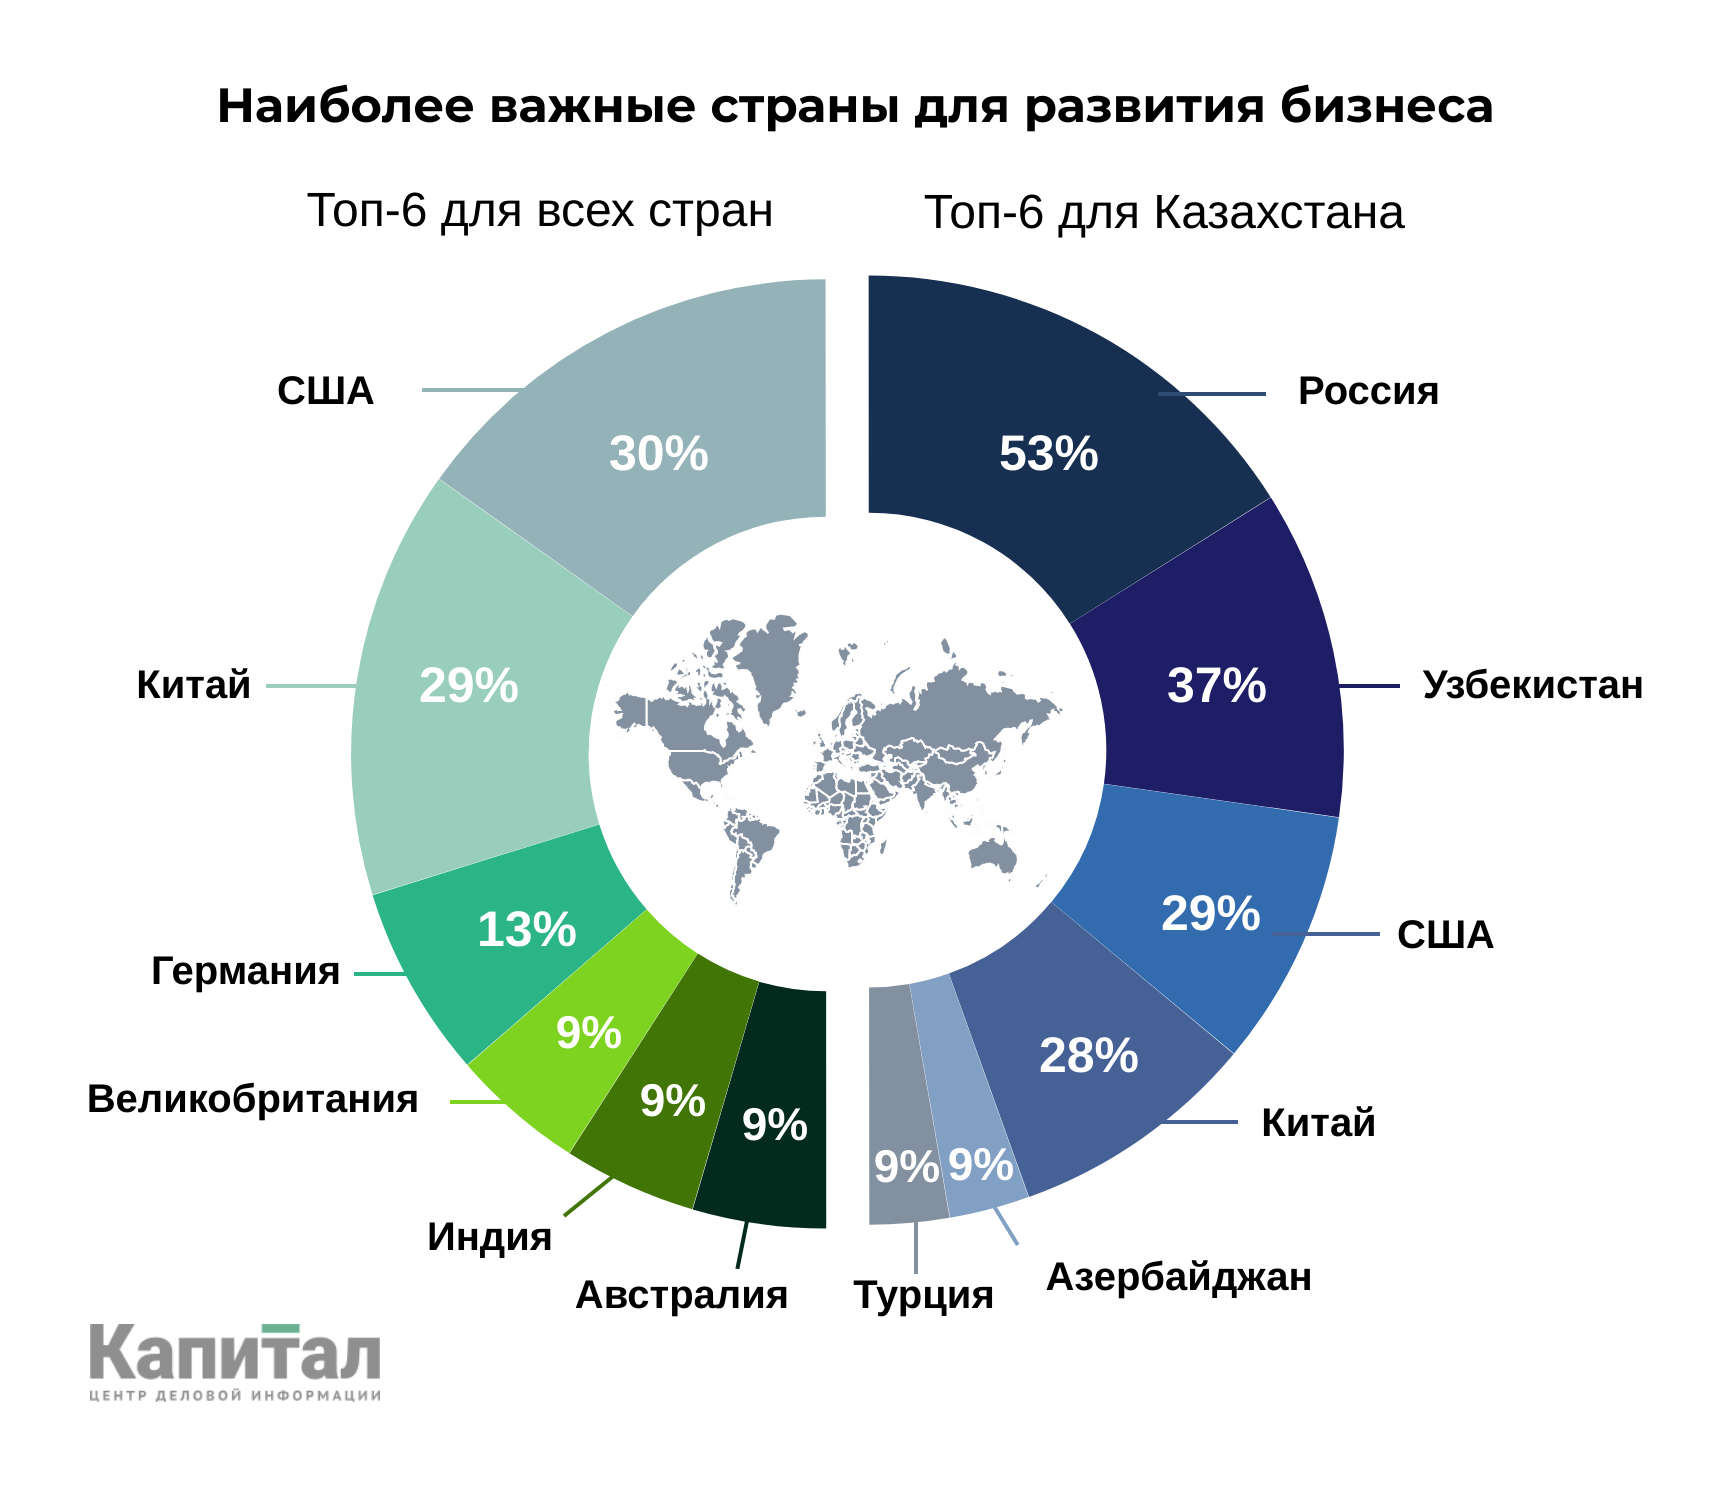 Российские организации в казахстане